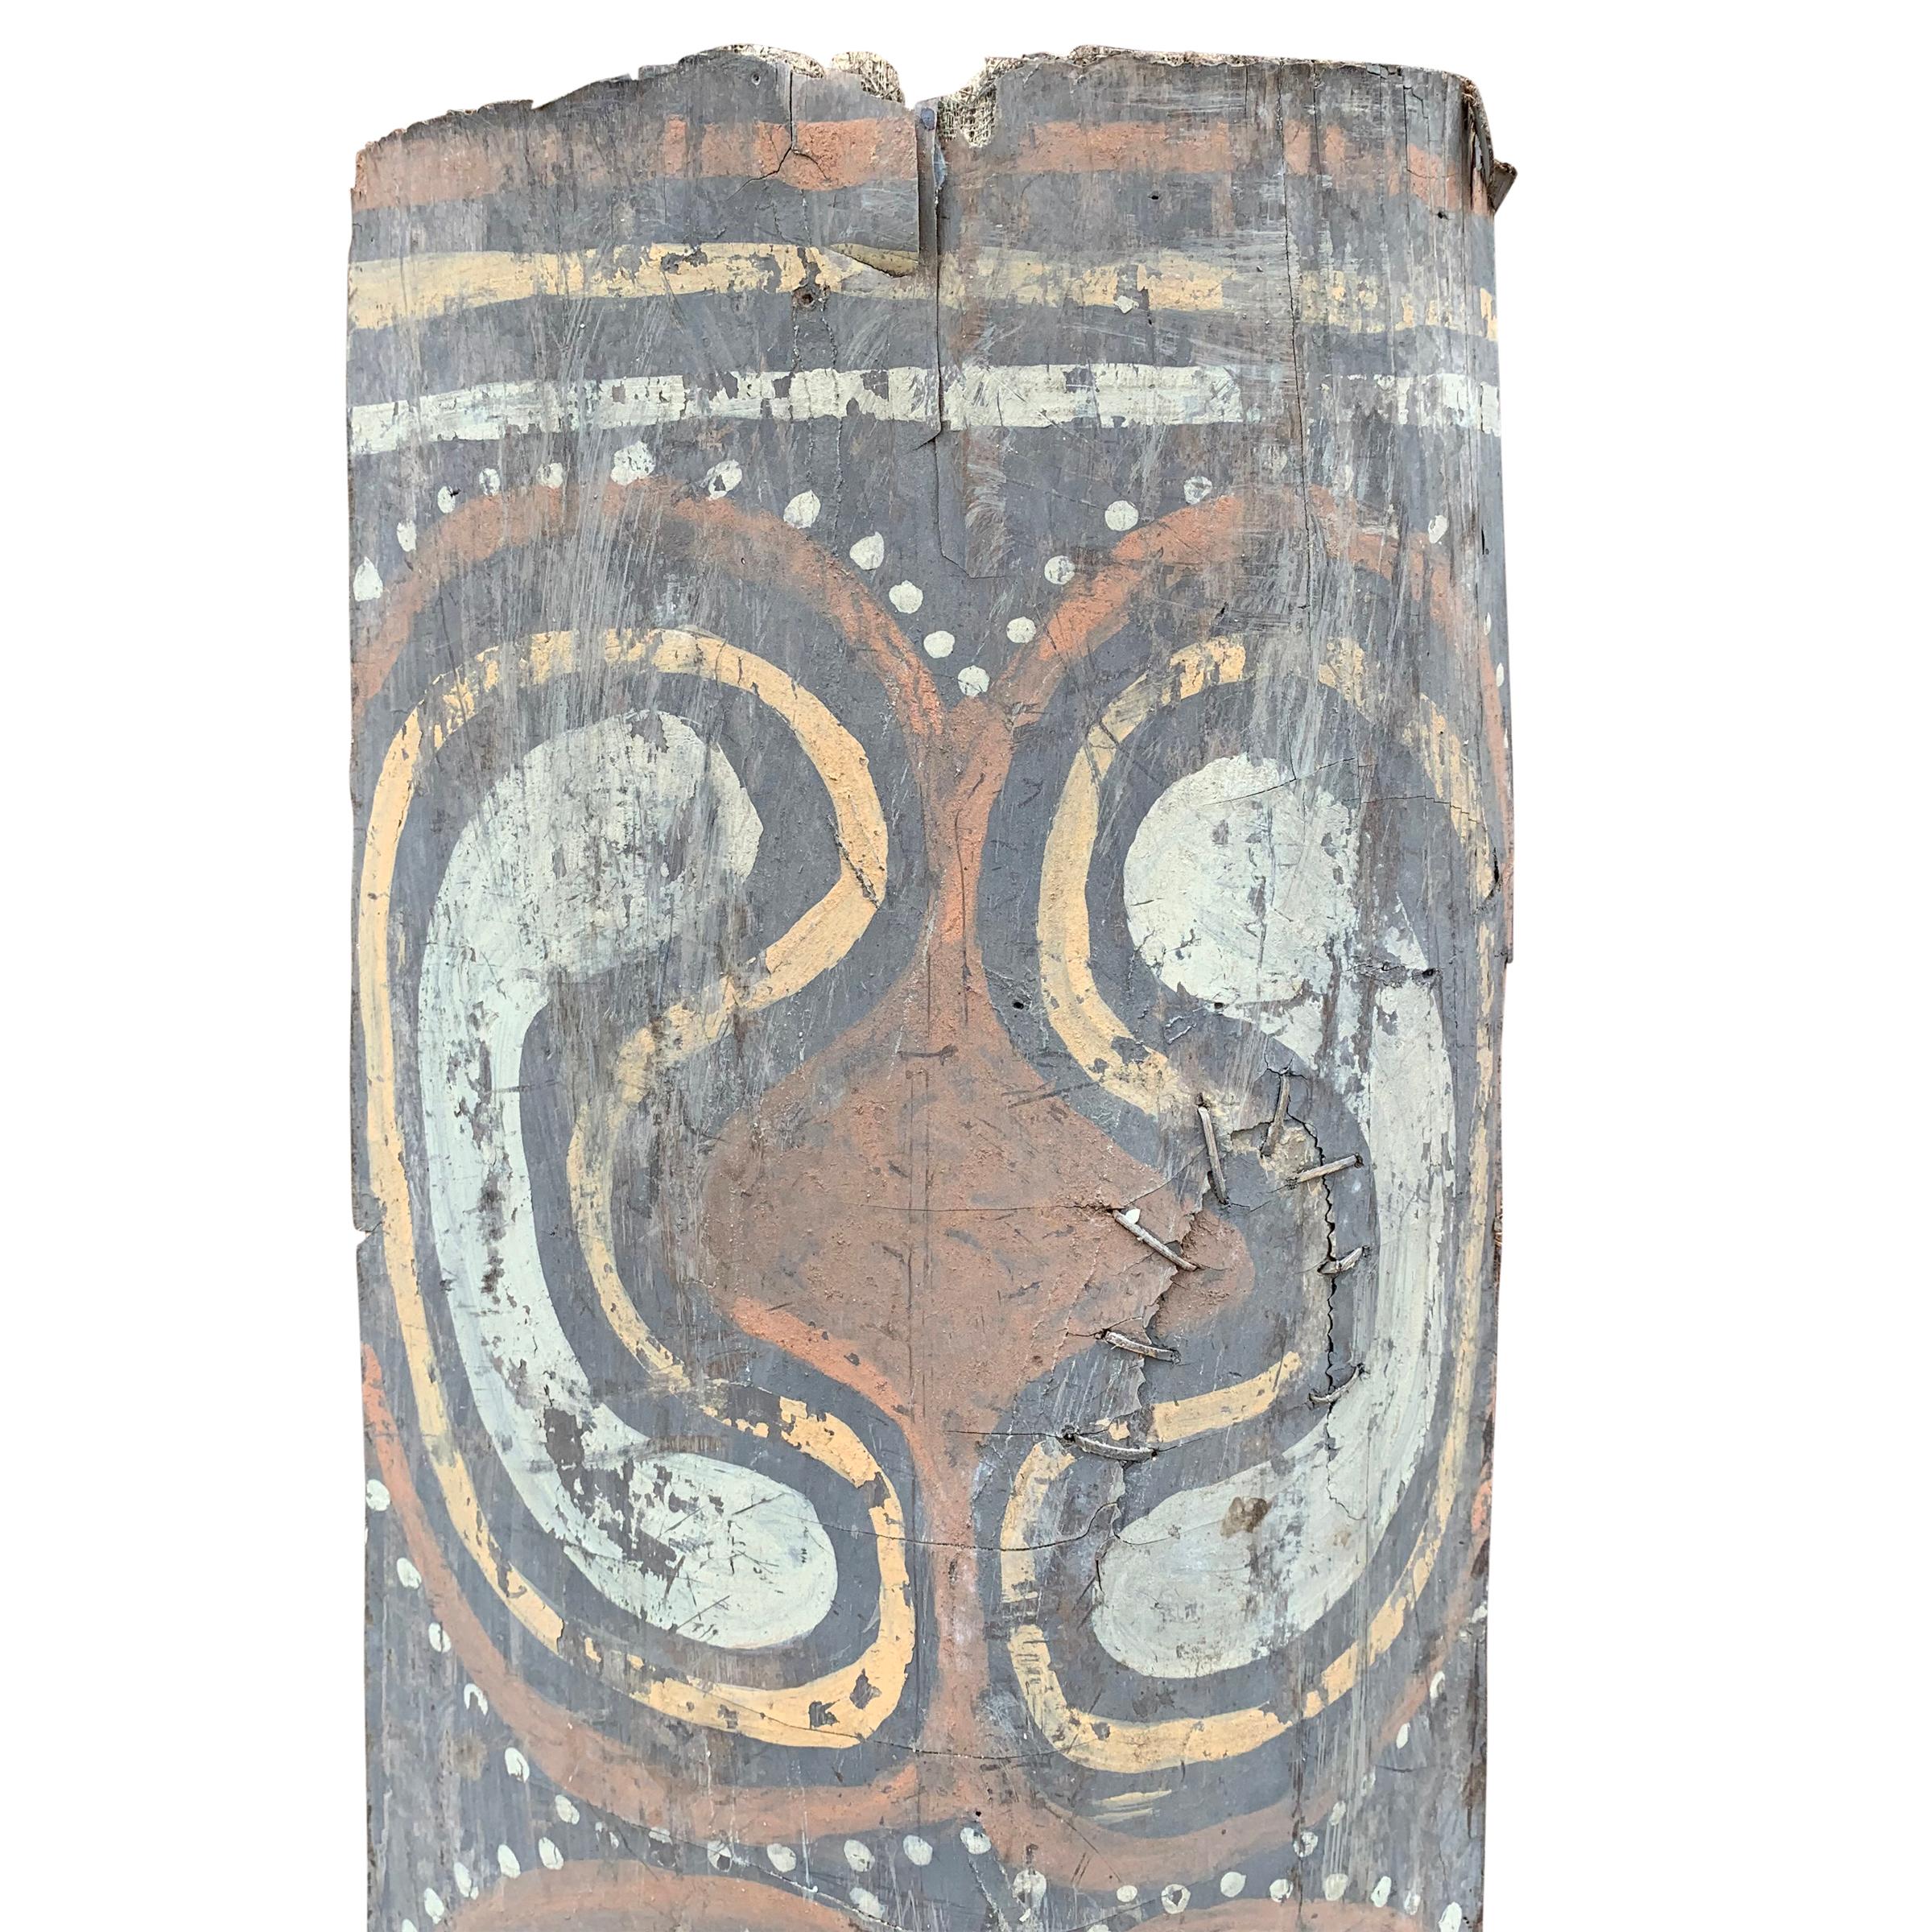 Peinture du plafond d'une maison cérémonielle Kwoma représentant un motif polychrome abstrait sur une spathe de palmier sagou. 

Du Metropolitan Museum of Art : 
